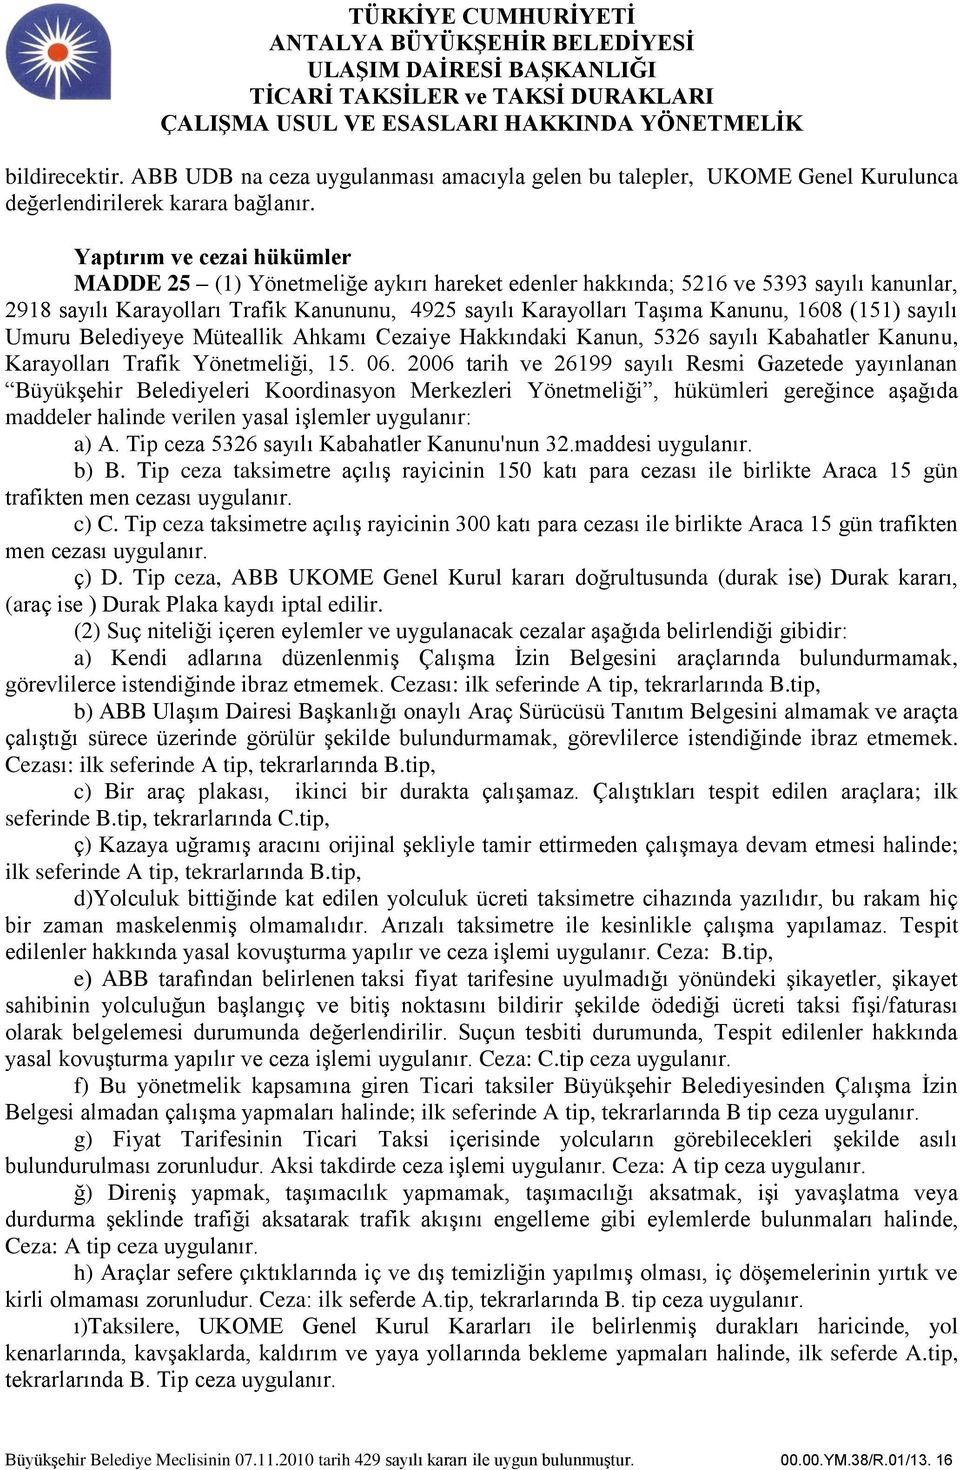 (151) sayılı Umuru Belediyeye Müteallik Ahkamı Cezaiye Hakkındaki Kanun, 5326 sayılı Kabahatler Kanunu, Karayolları Trafik Yönetmeliği, 15. 06.